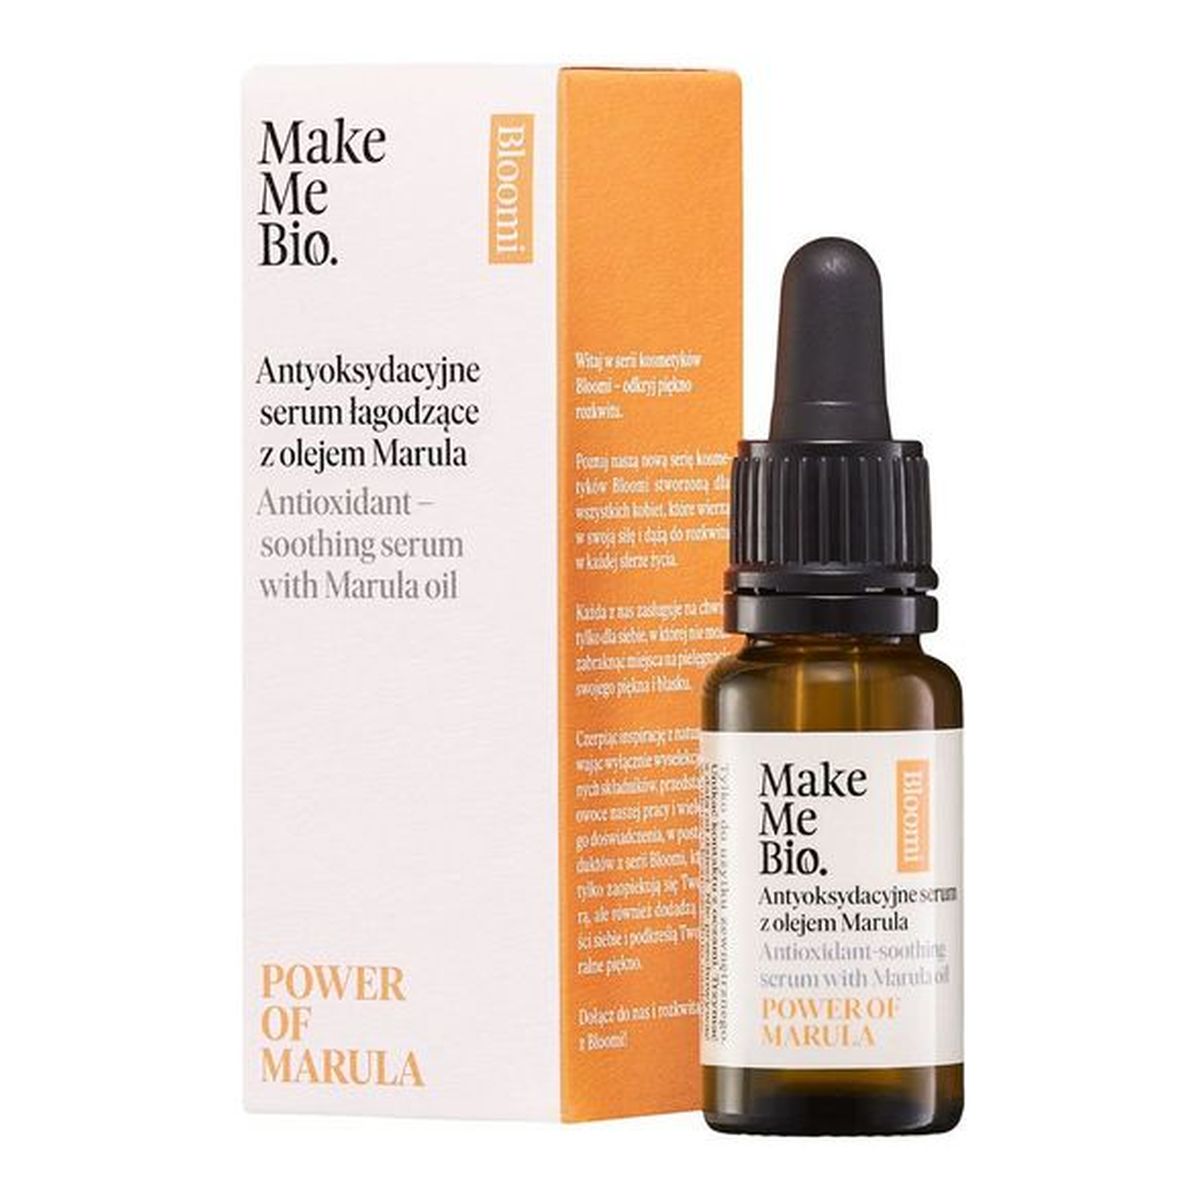 Make Me Bio Bloomi Power Of Marula Antyoksydacyjne serum łagodzące z olejem Marula 15ml